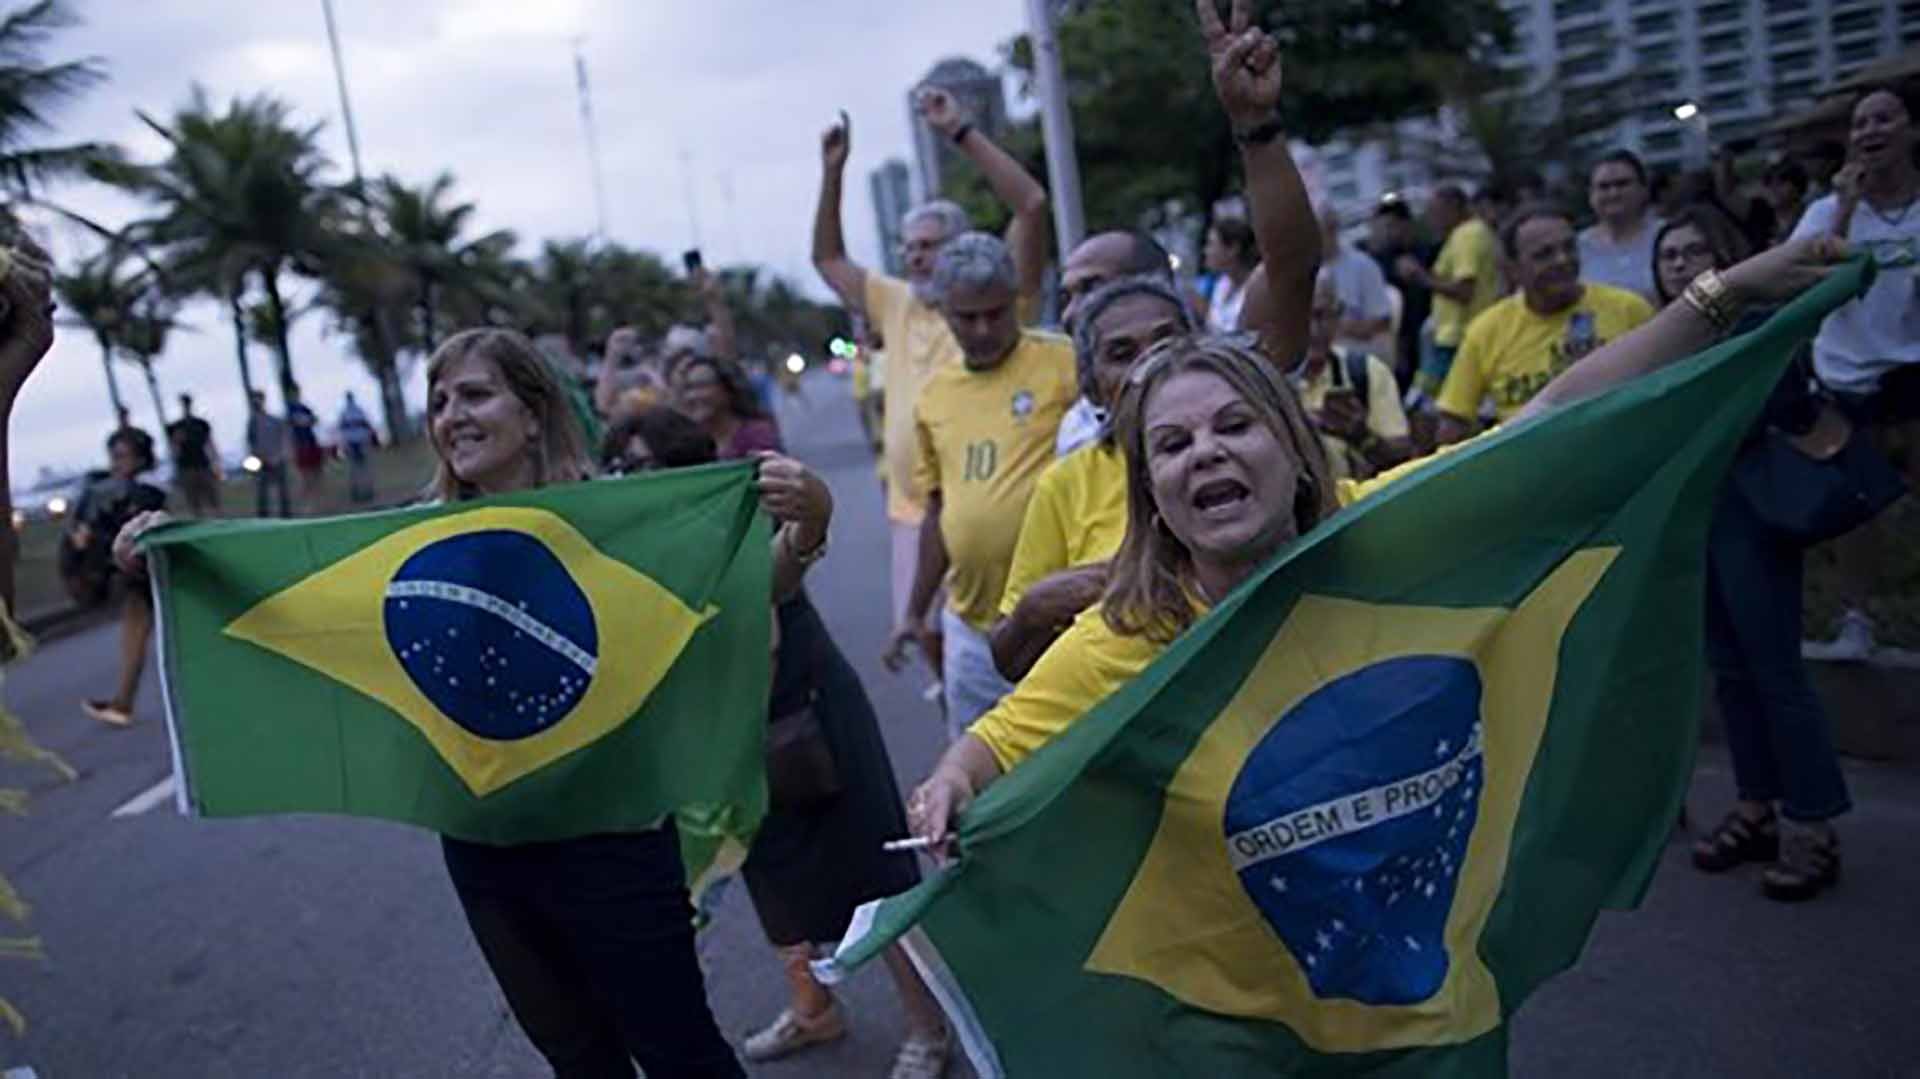 Ngày 2/10, 158 triệu cử tri Brazil sẽ bỏ phiếu bầu Tổng thống, Phó Tổng thống, Quốc hội cùng nhiều vị trí quan trọng khác trong hệ thống chính trị Brazil. (Nguồn: AP)